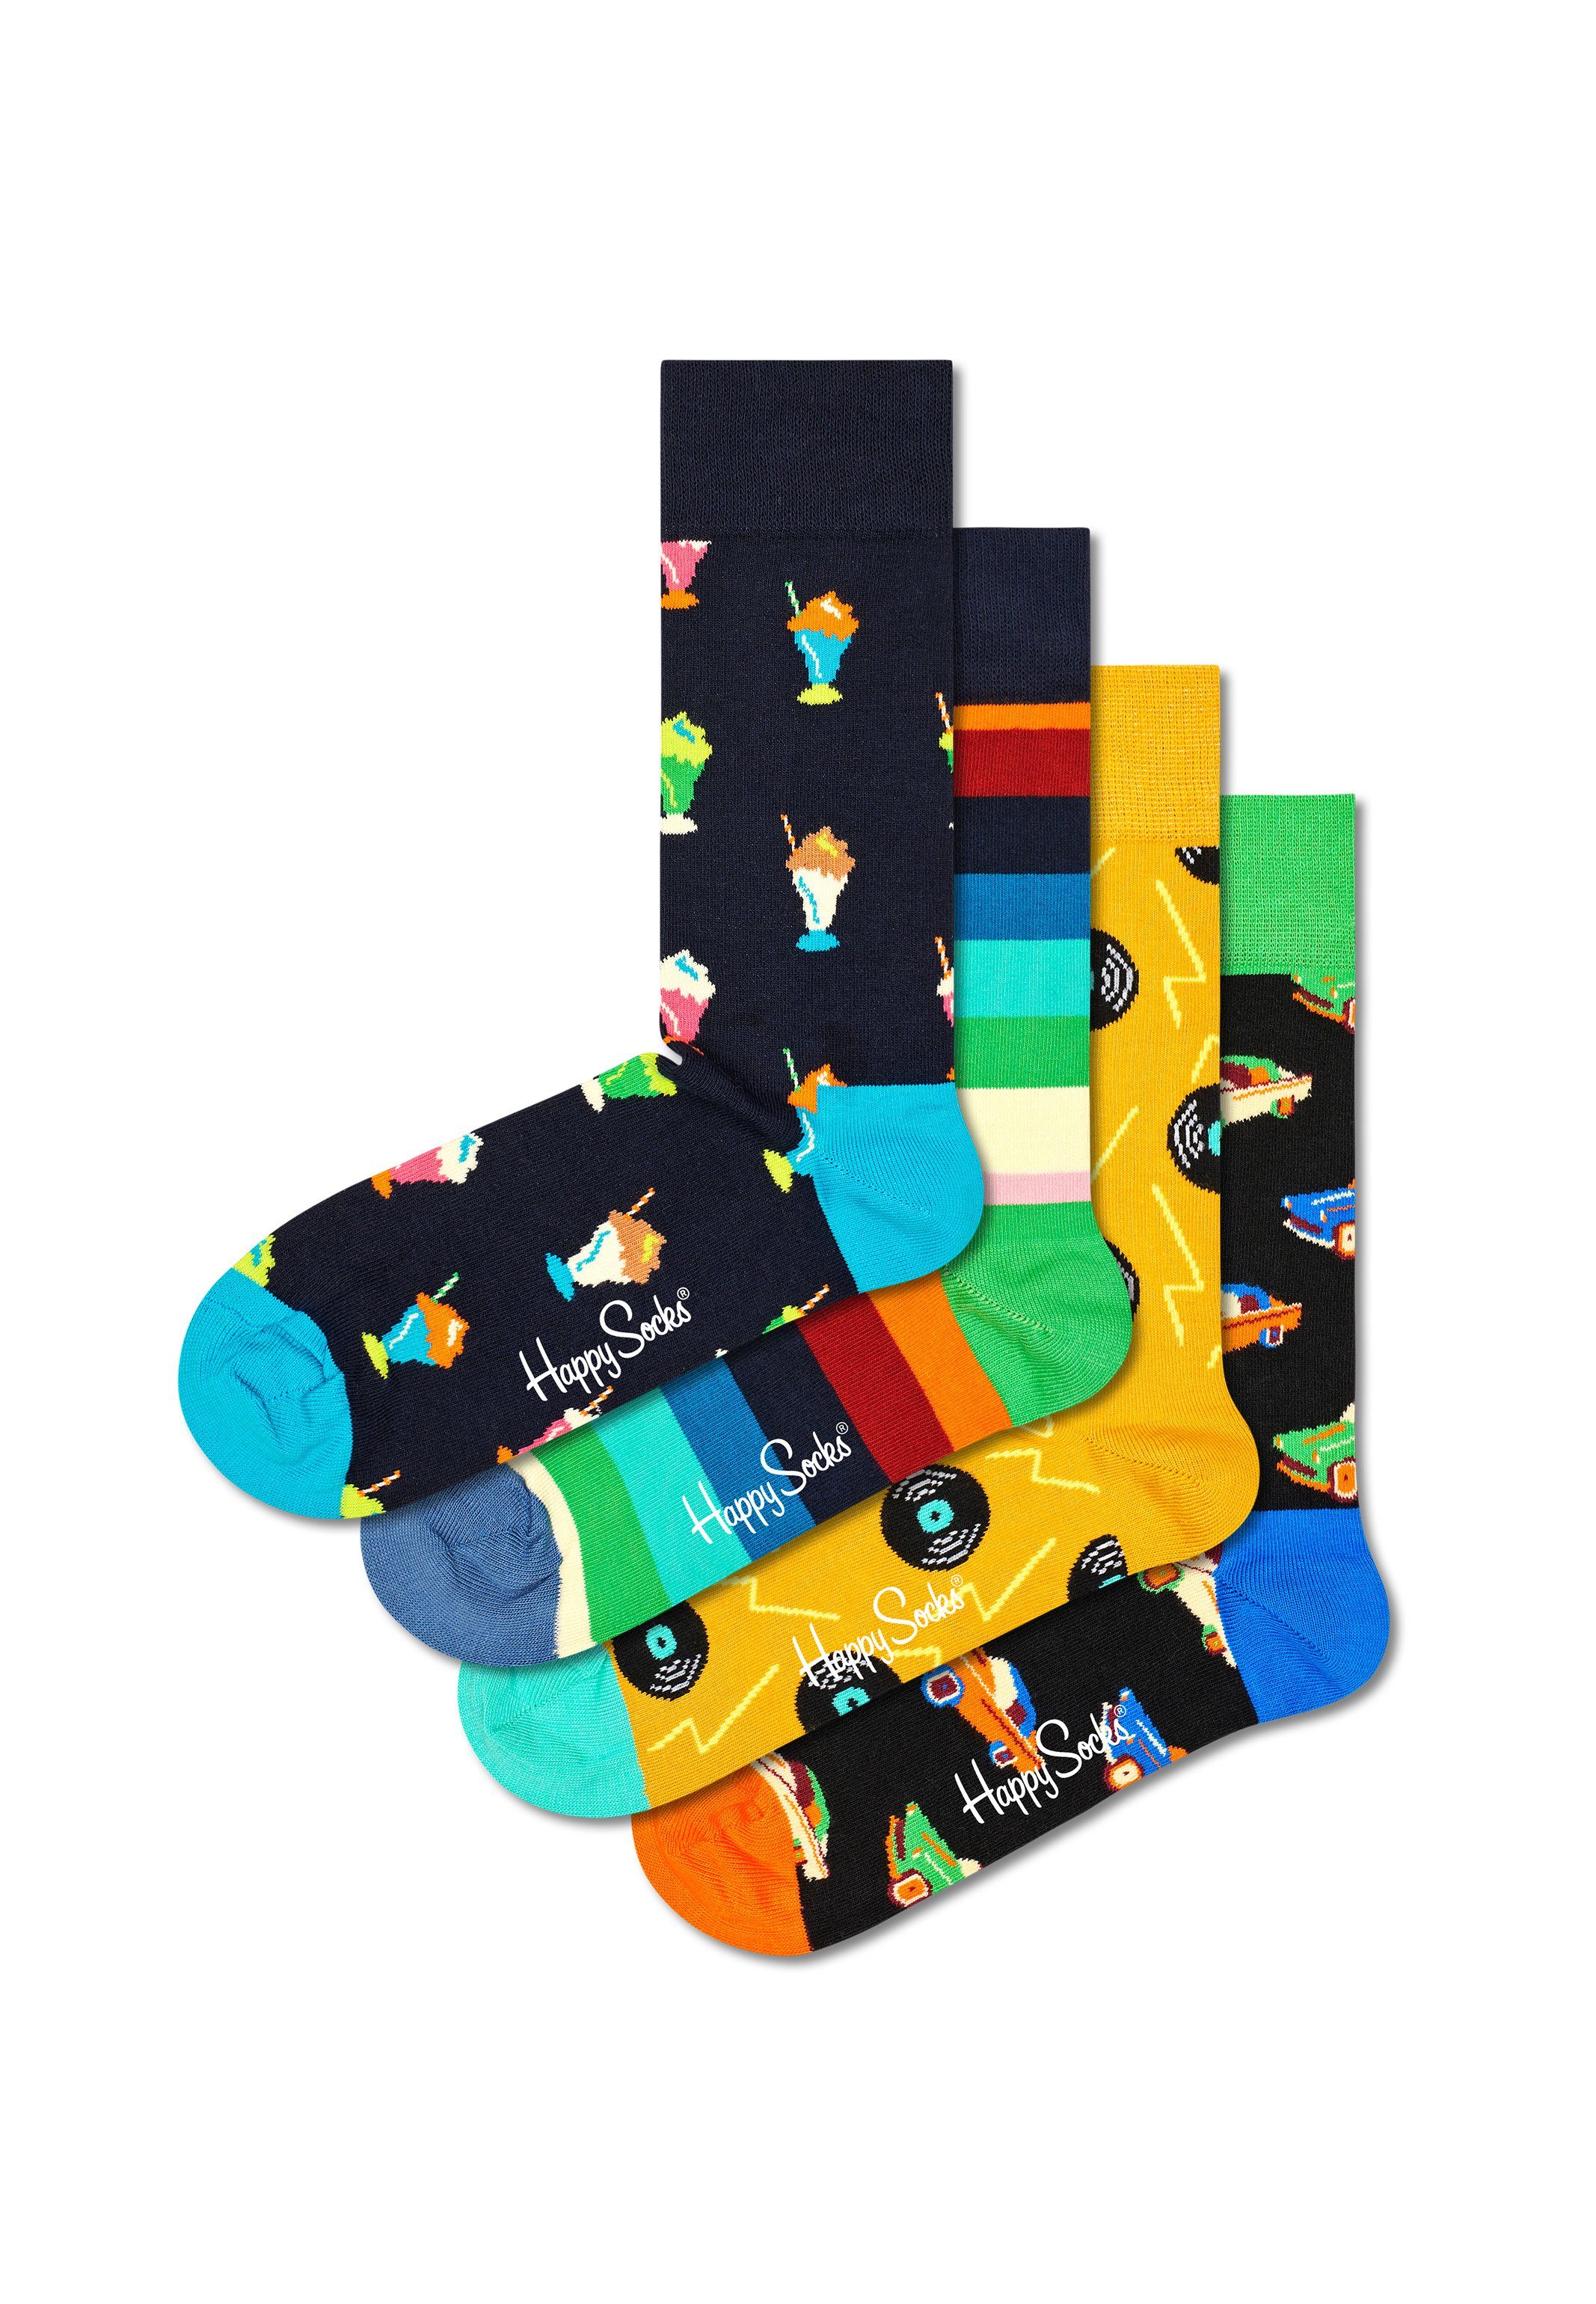 Happy Socks Langsocken At The Diner Geschenk Box (Spar-Set, 4-Paar) 4 Paar Socken - Baumwolle - 4 Paar bunte Socken in einer Geschenkbox